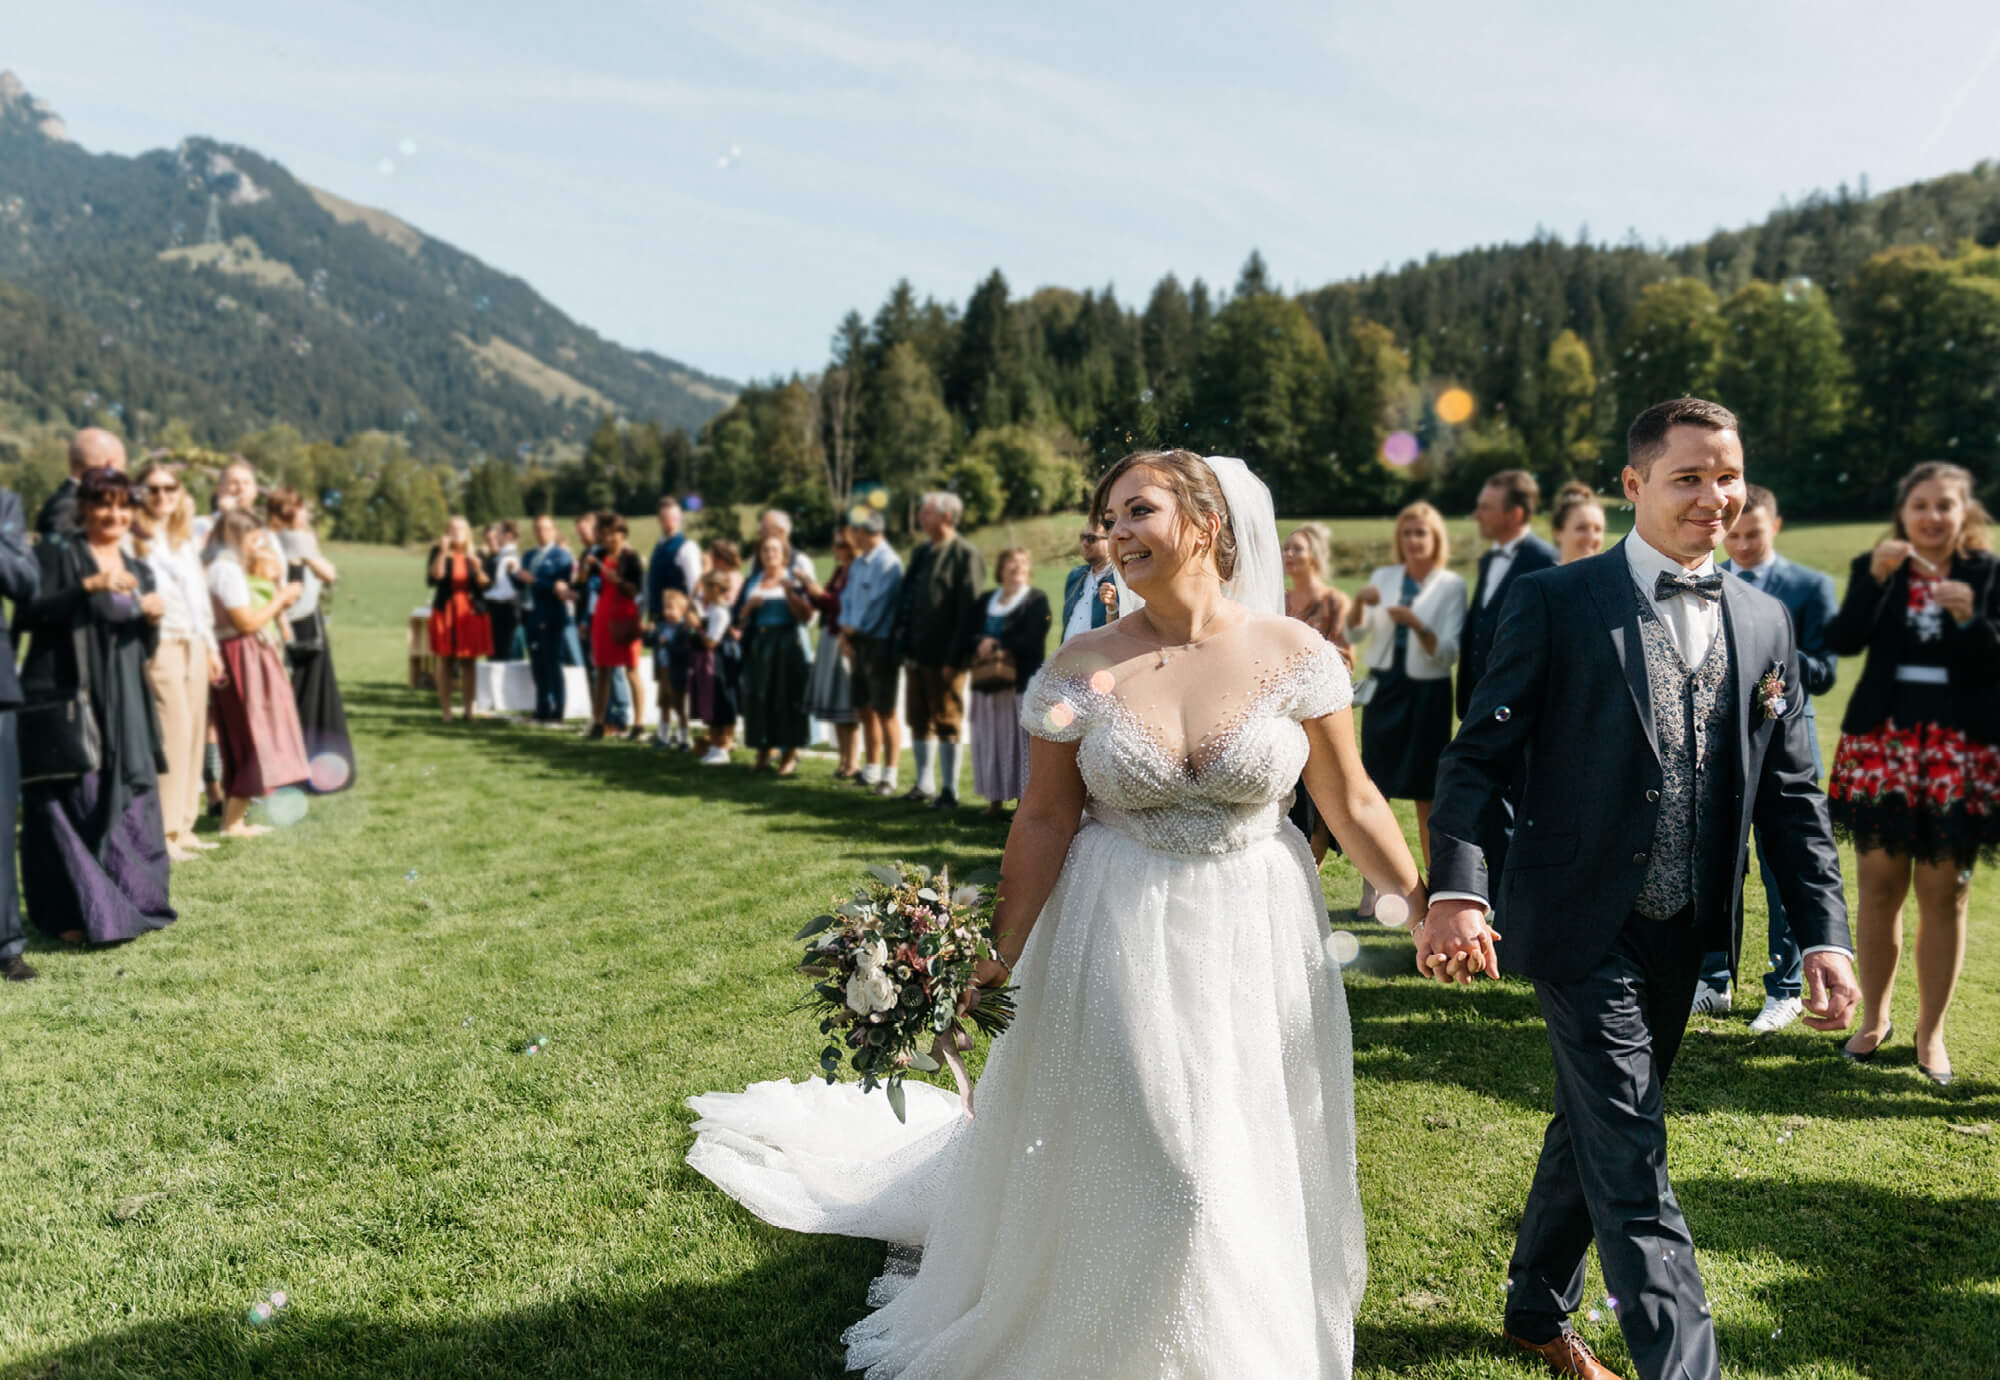 Edle Scheunen Hochzeit in Bayern mit freier Trauung auf der Wiese